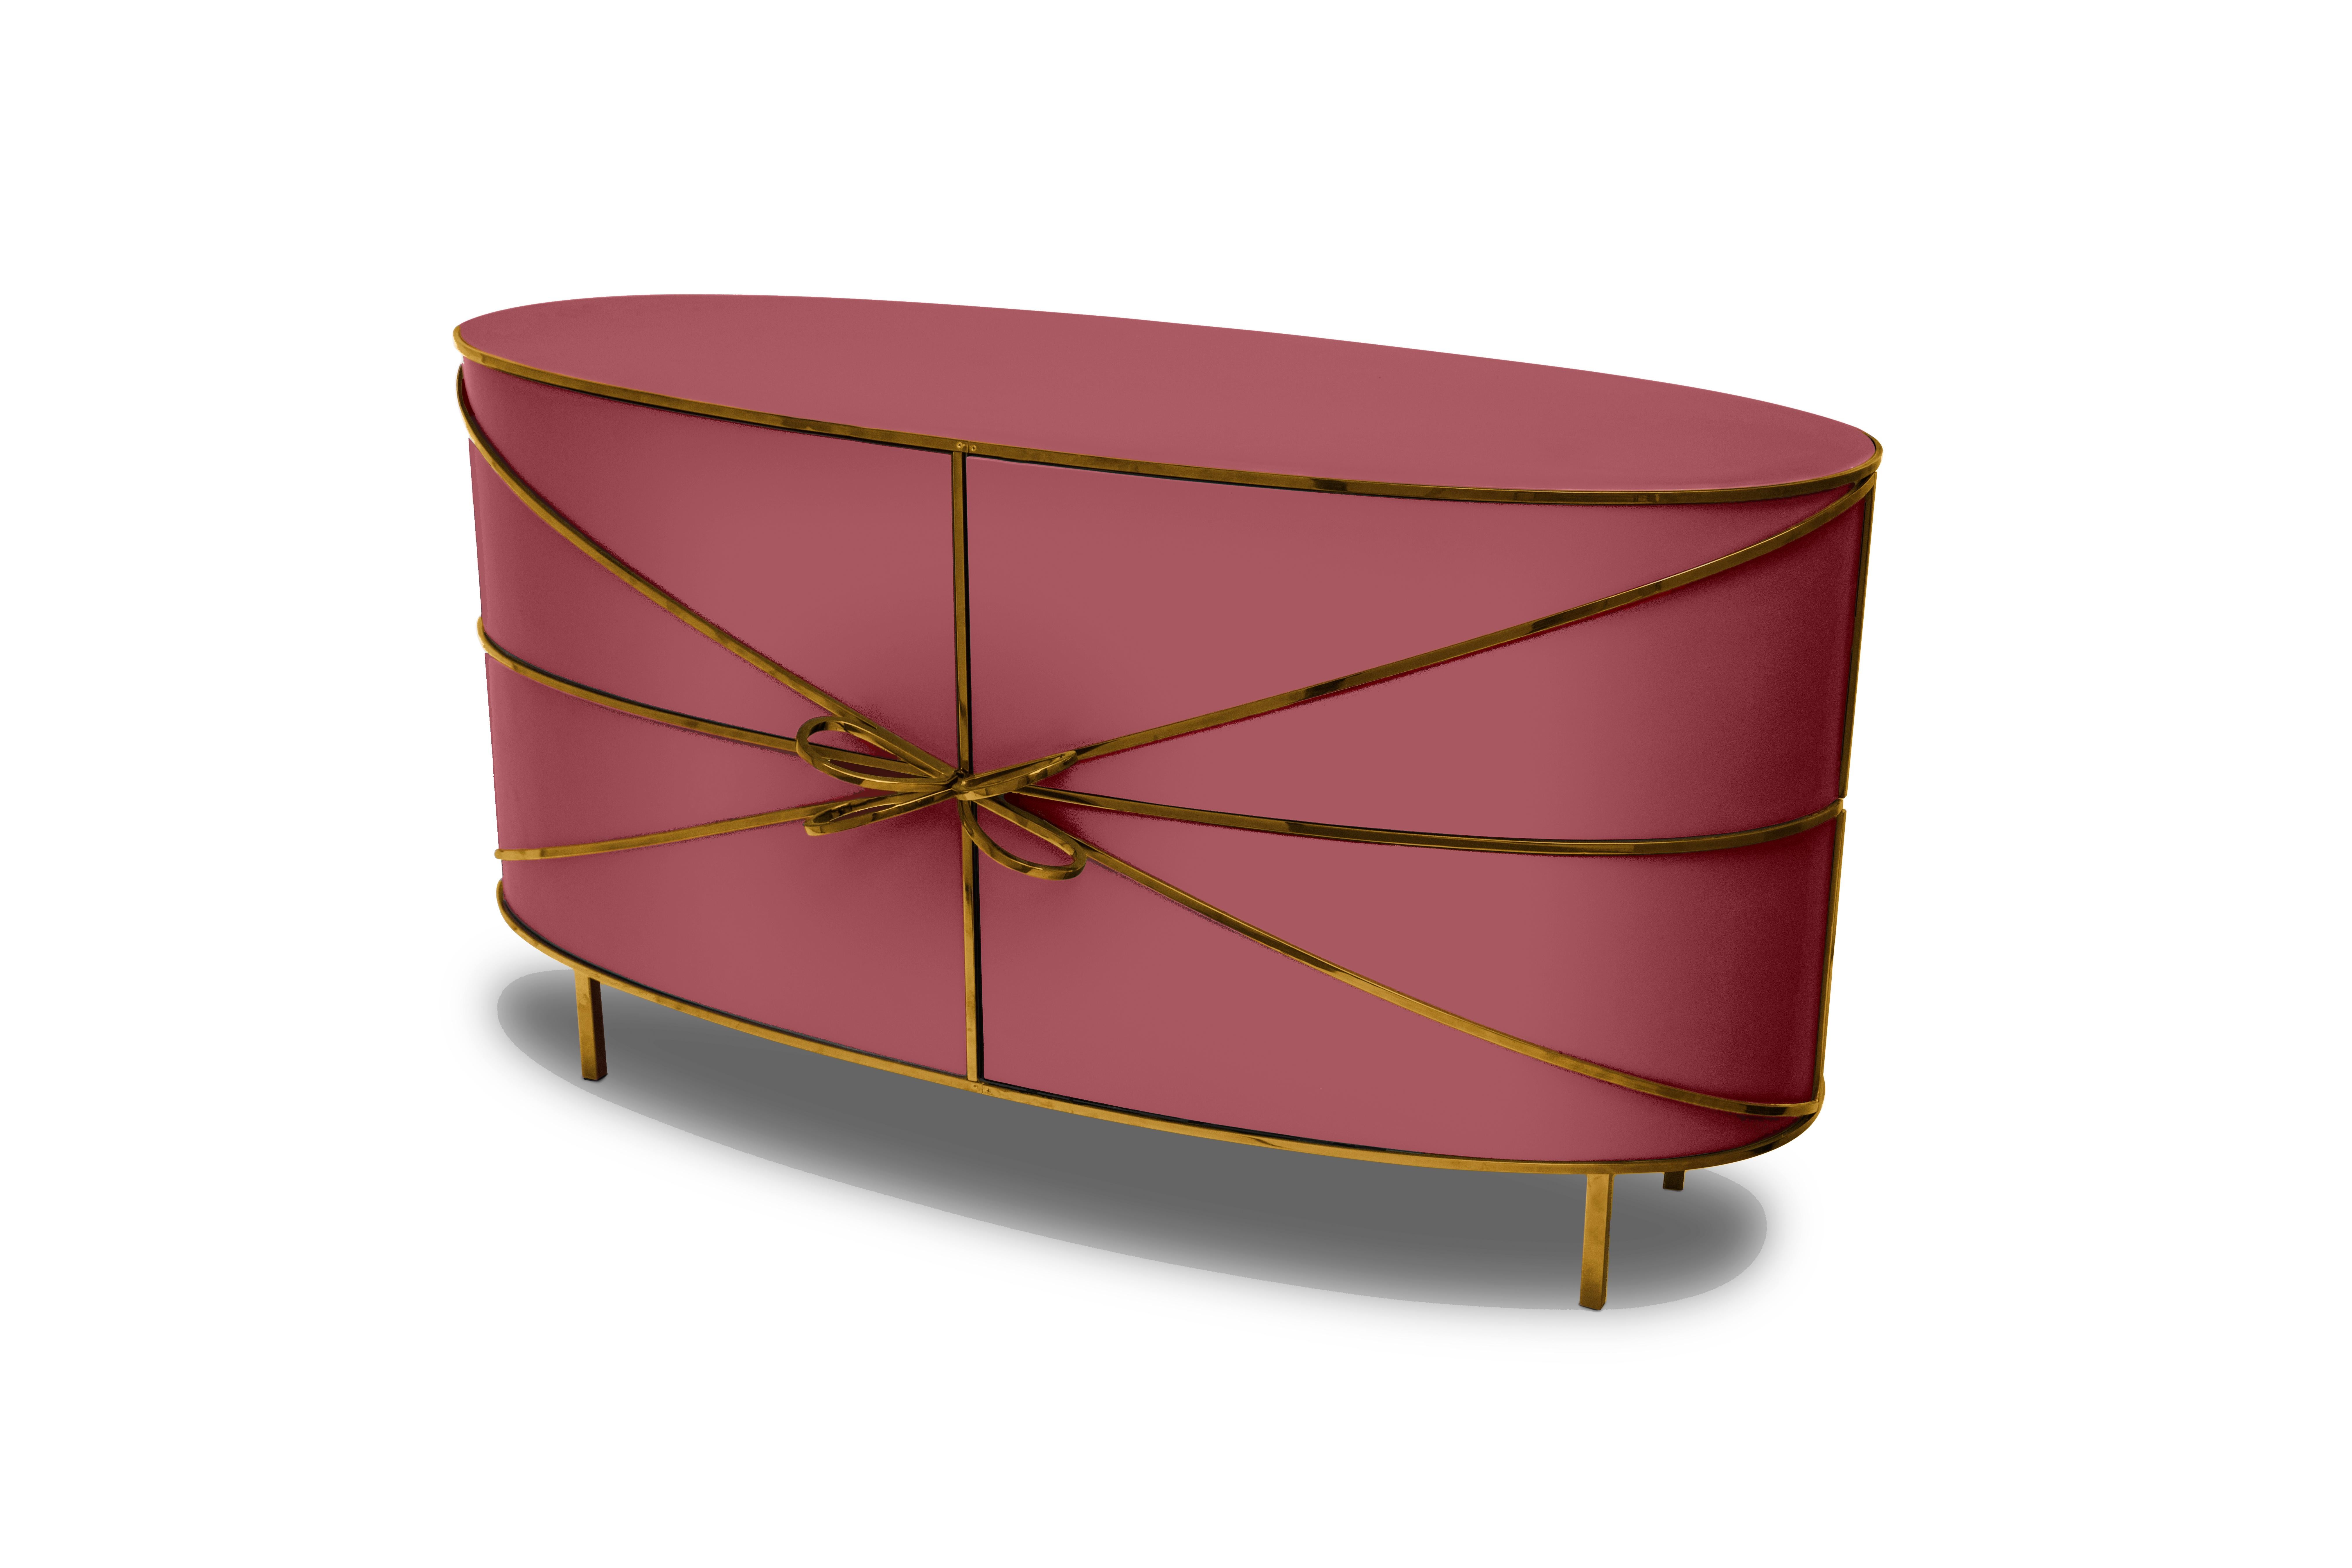 88 Secrets Rose Pink Sideboard with Gold Trims von Nika Zupanc ist ein wunderschönes rosafarbenes Sideboard mit sinnlichen, femininen Linien und luxuriösen goldenen Metallverzierungen. Ein Blickfang in jedem Innenraum!

Nika Zupanc, eine auffallend